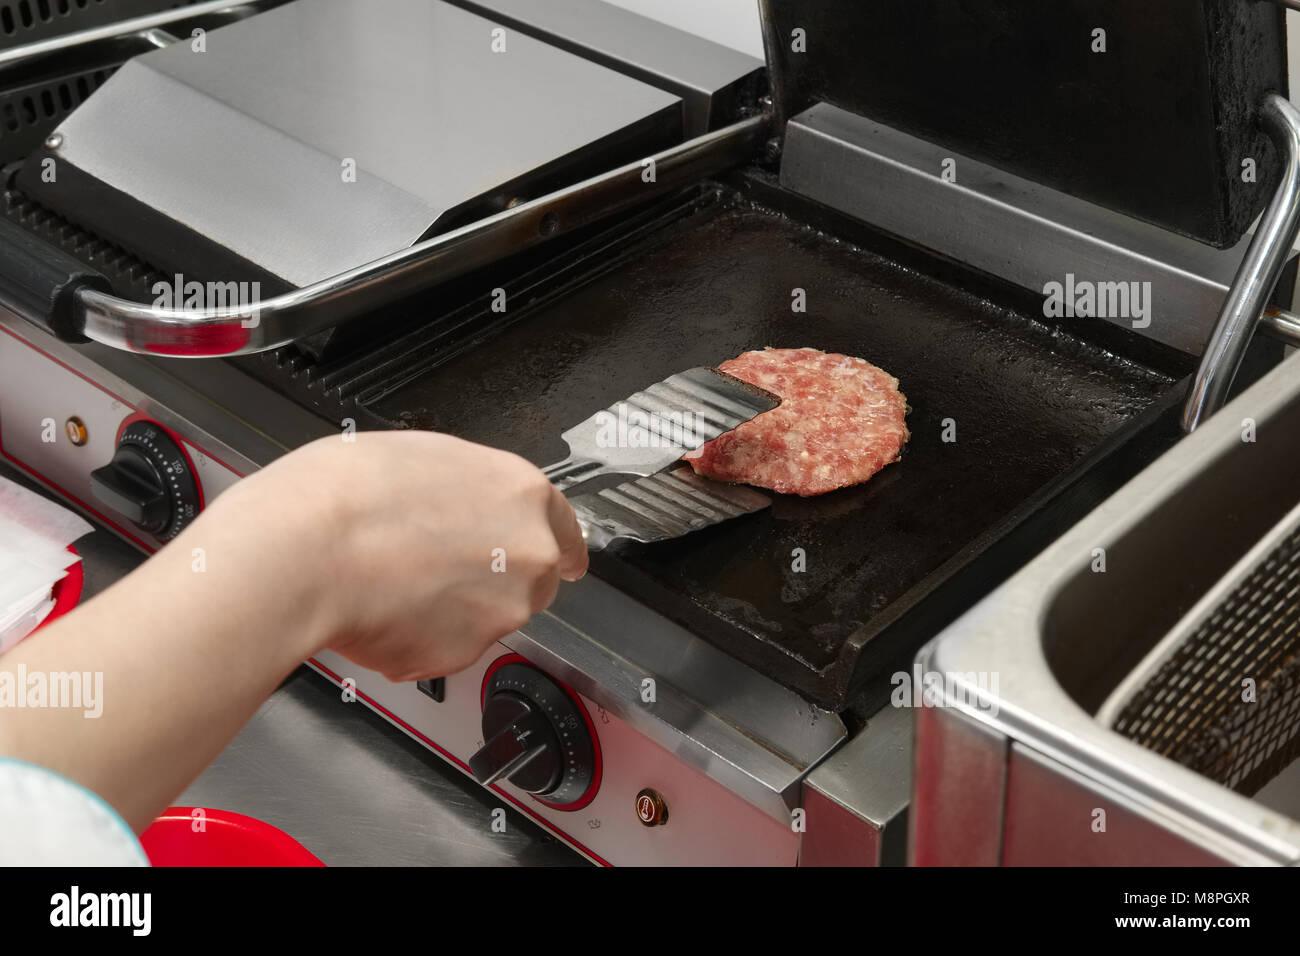 Braten kochen Schnitzel auf Grill und das Schnitzel für Burger  Stockfotografie - Alamy